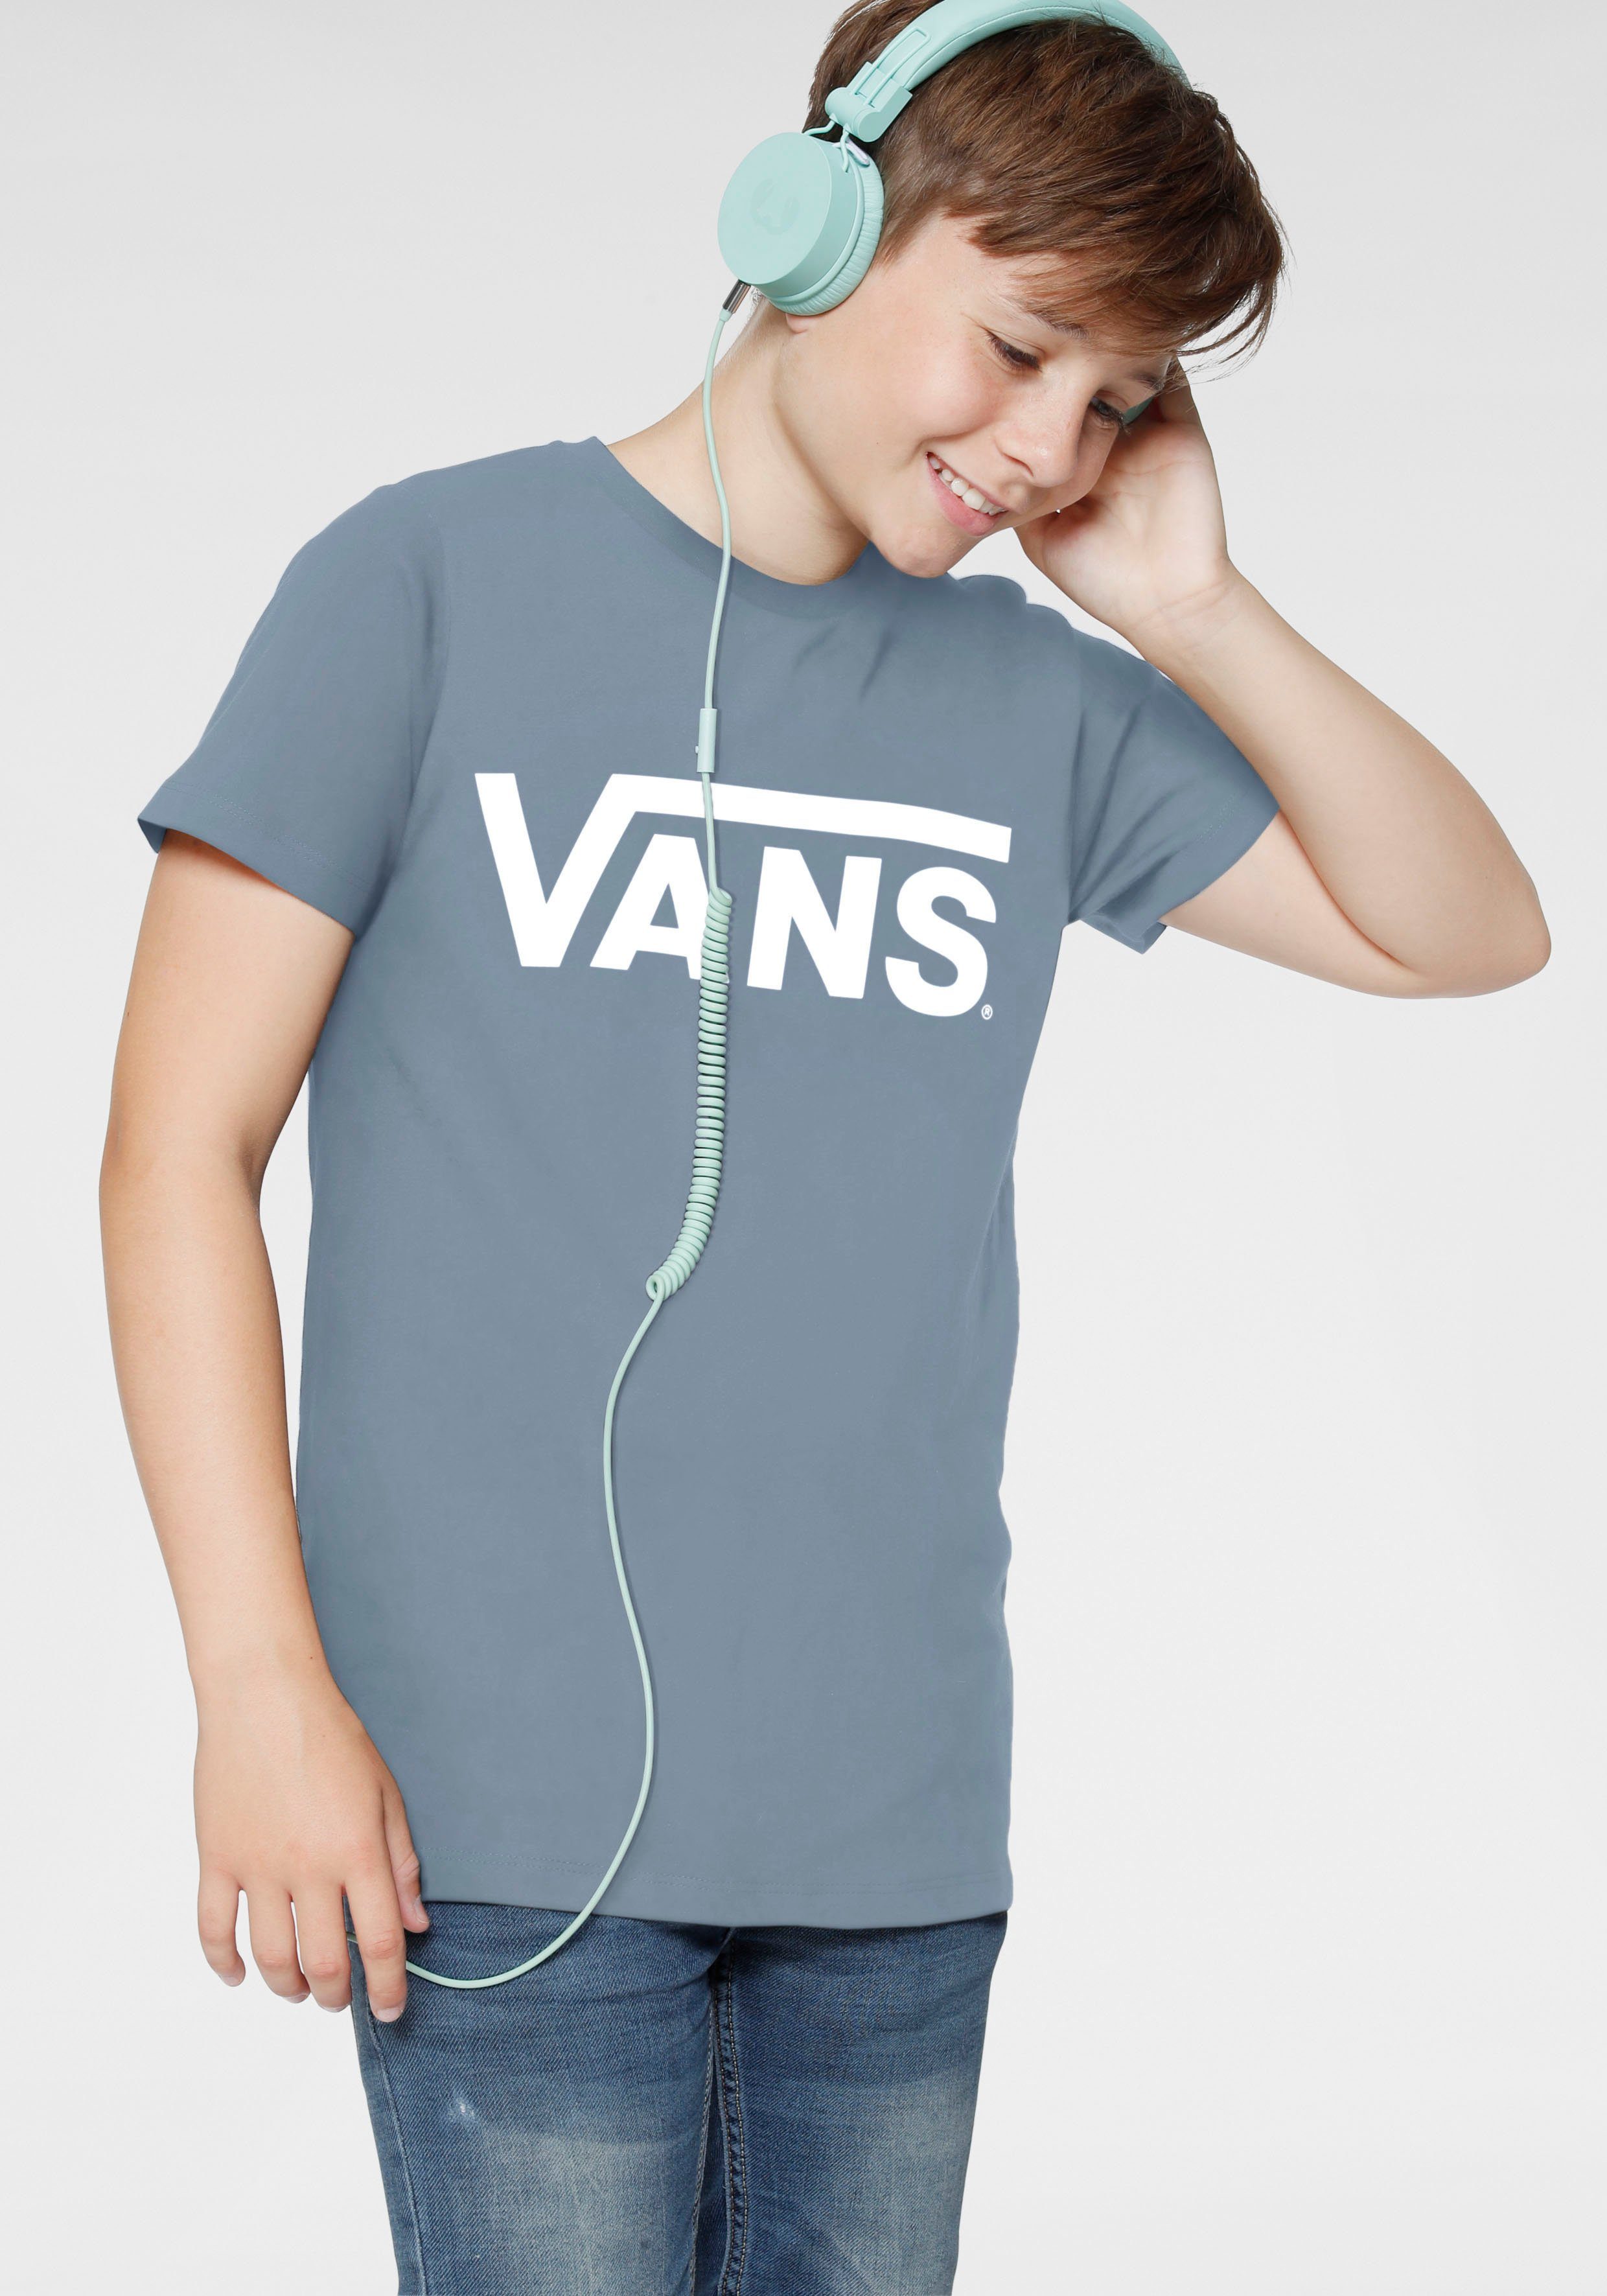 Vans T-Shirt für Kinder